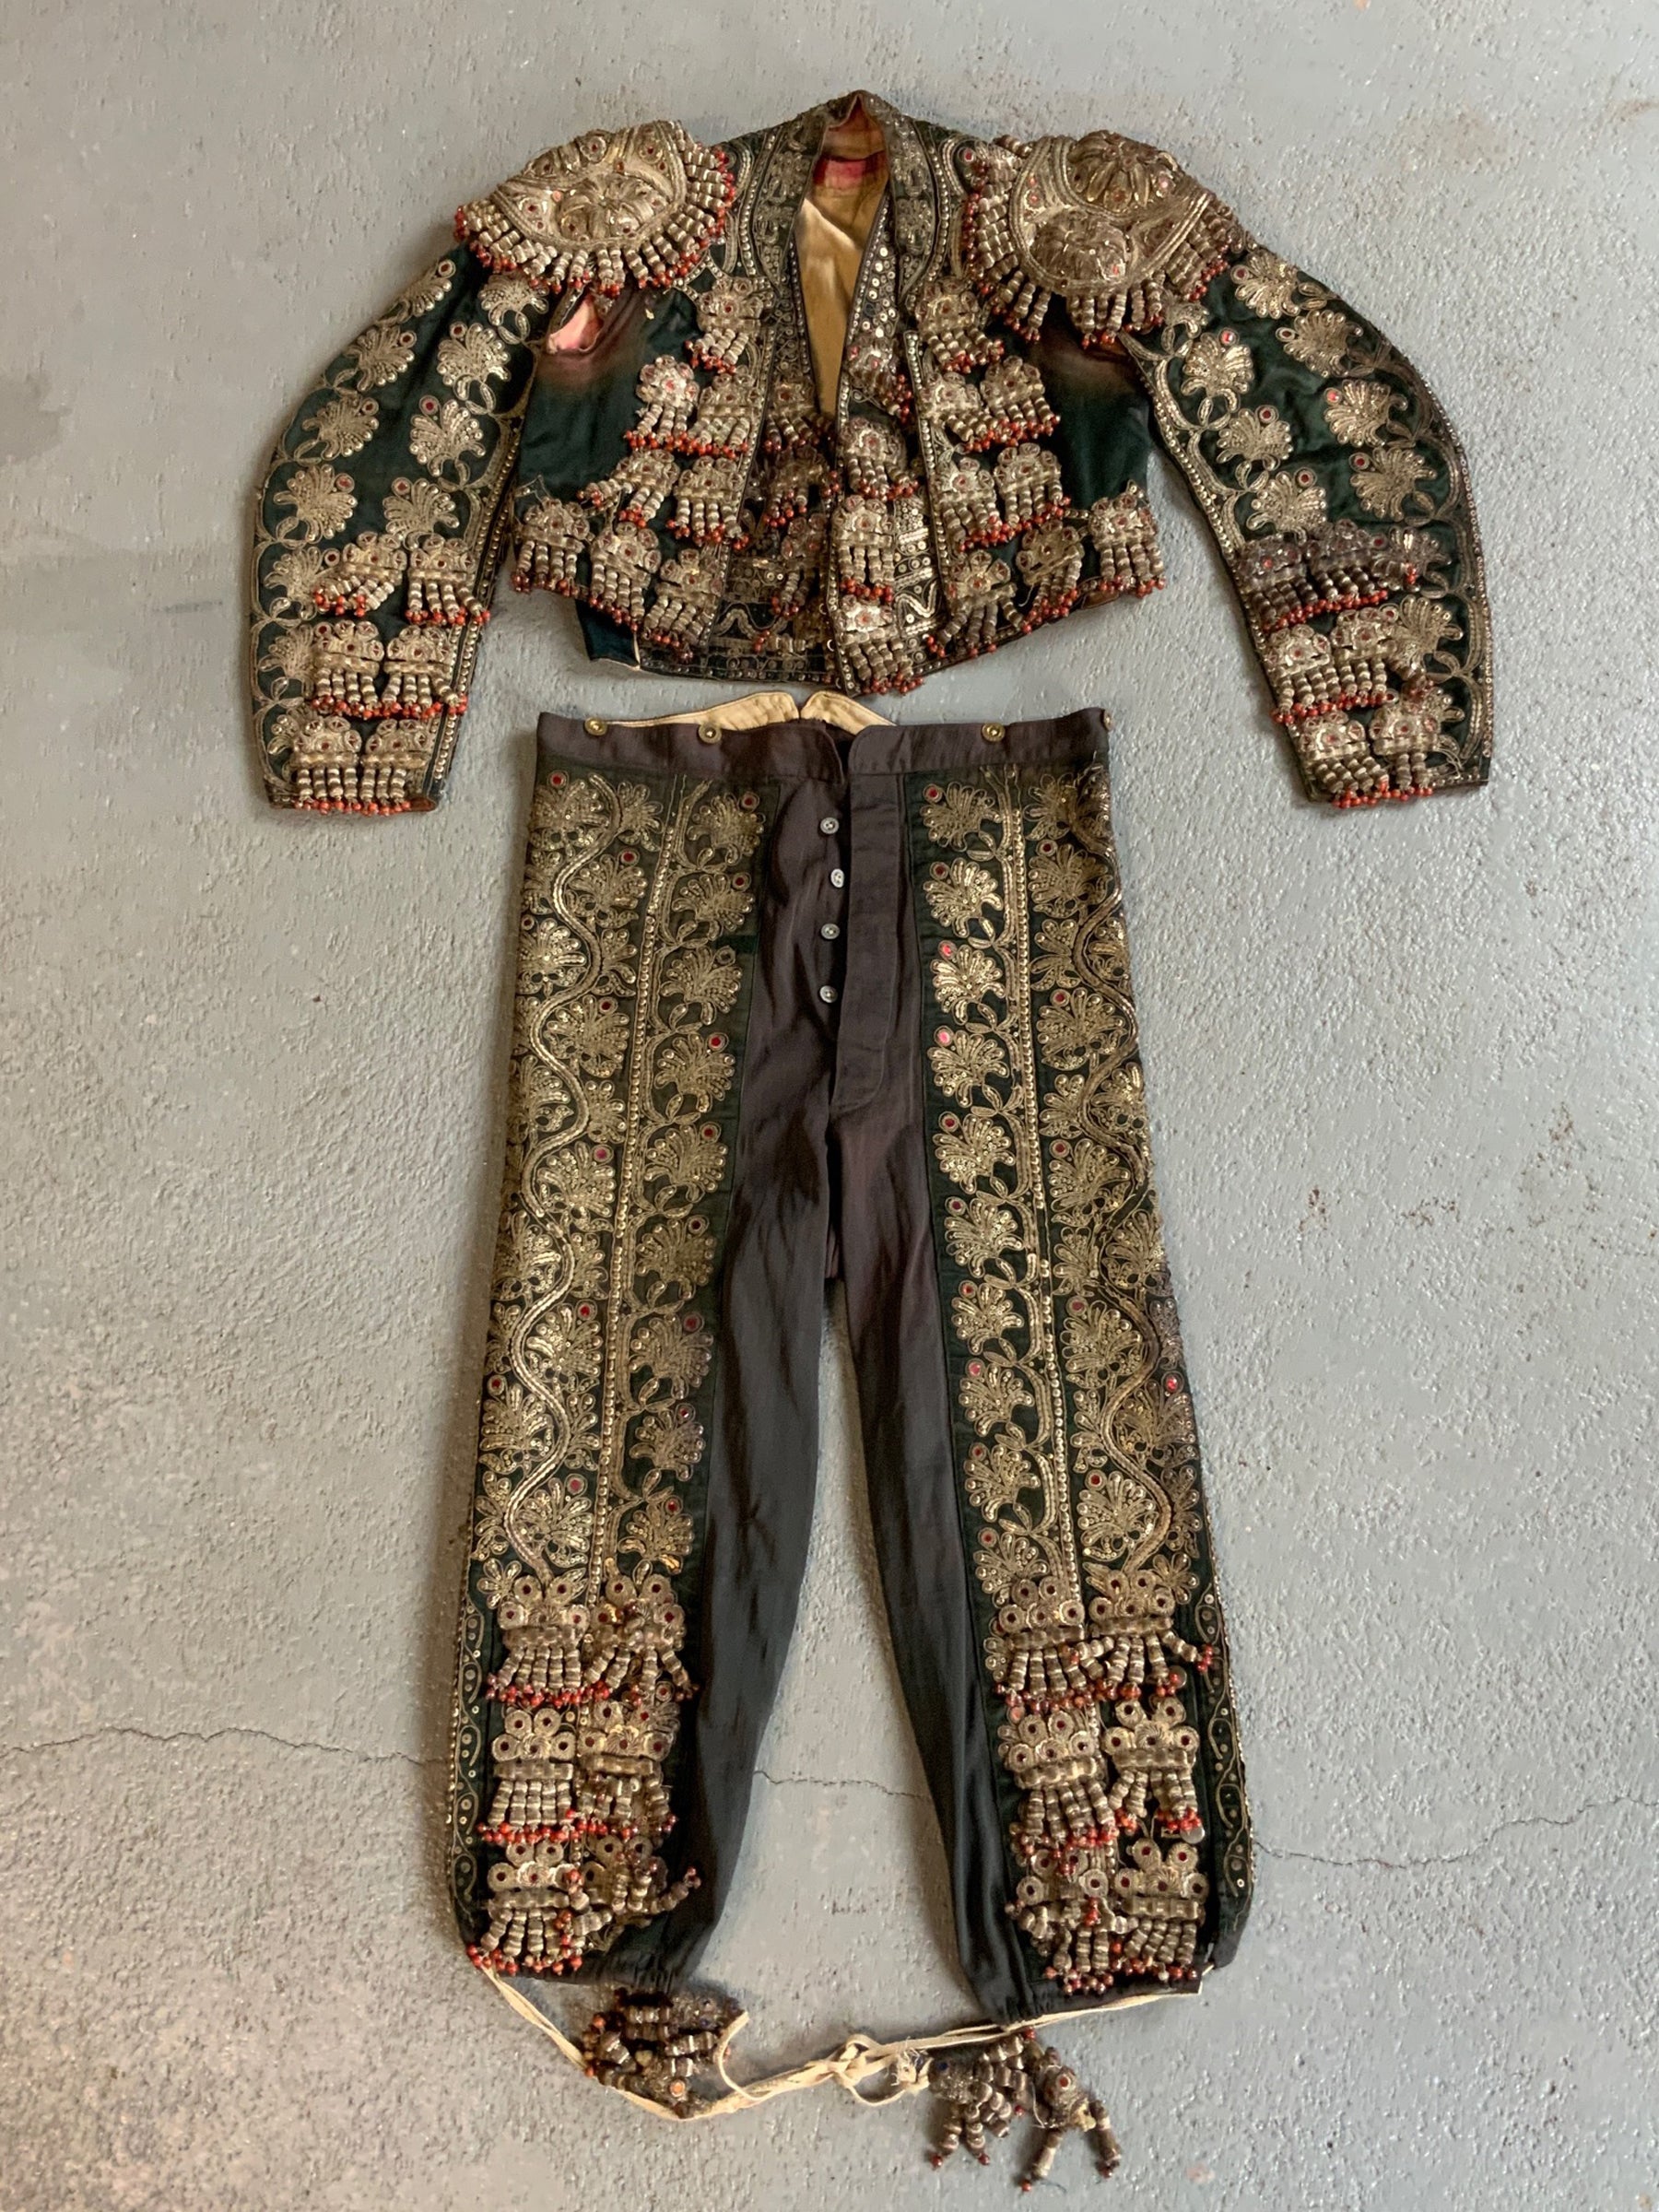 Spanish Novilleros ( Novice ) Matador vintage suit outfit